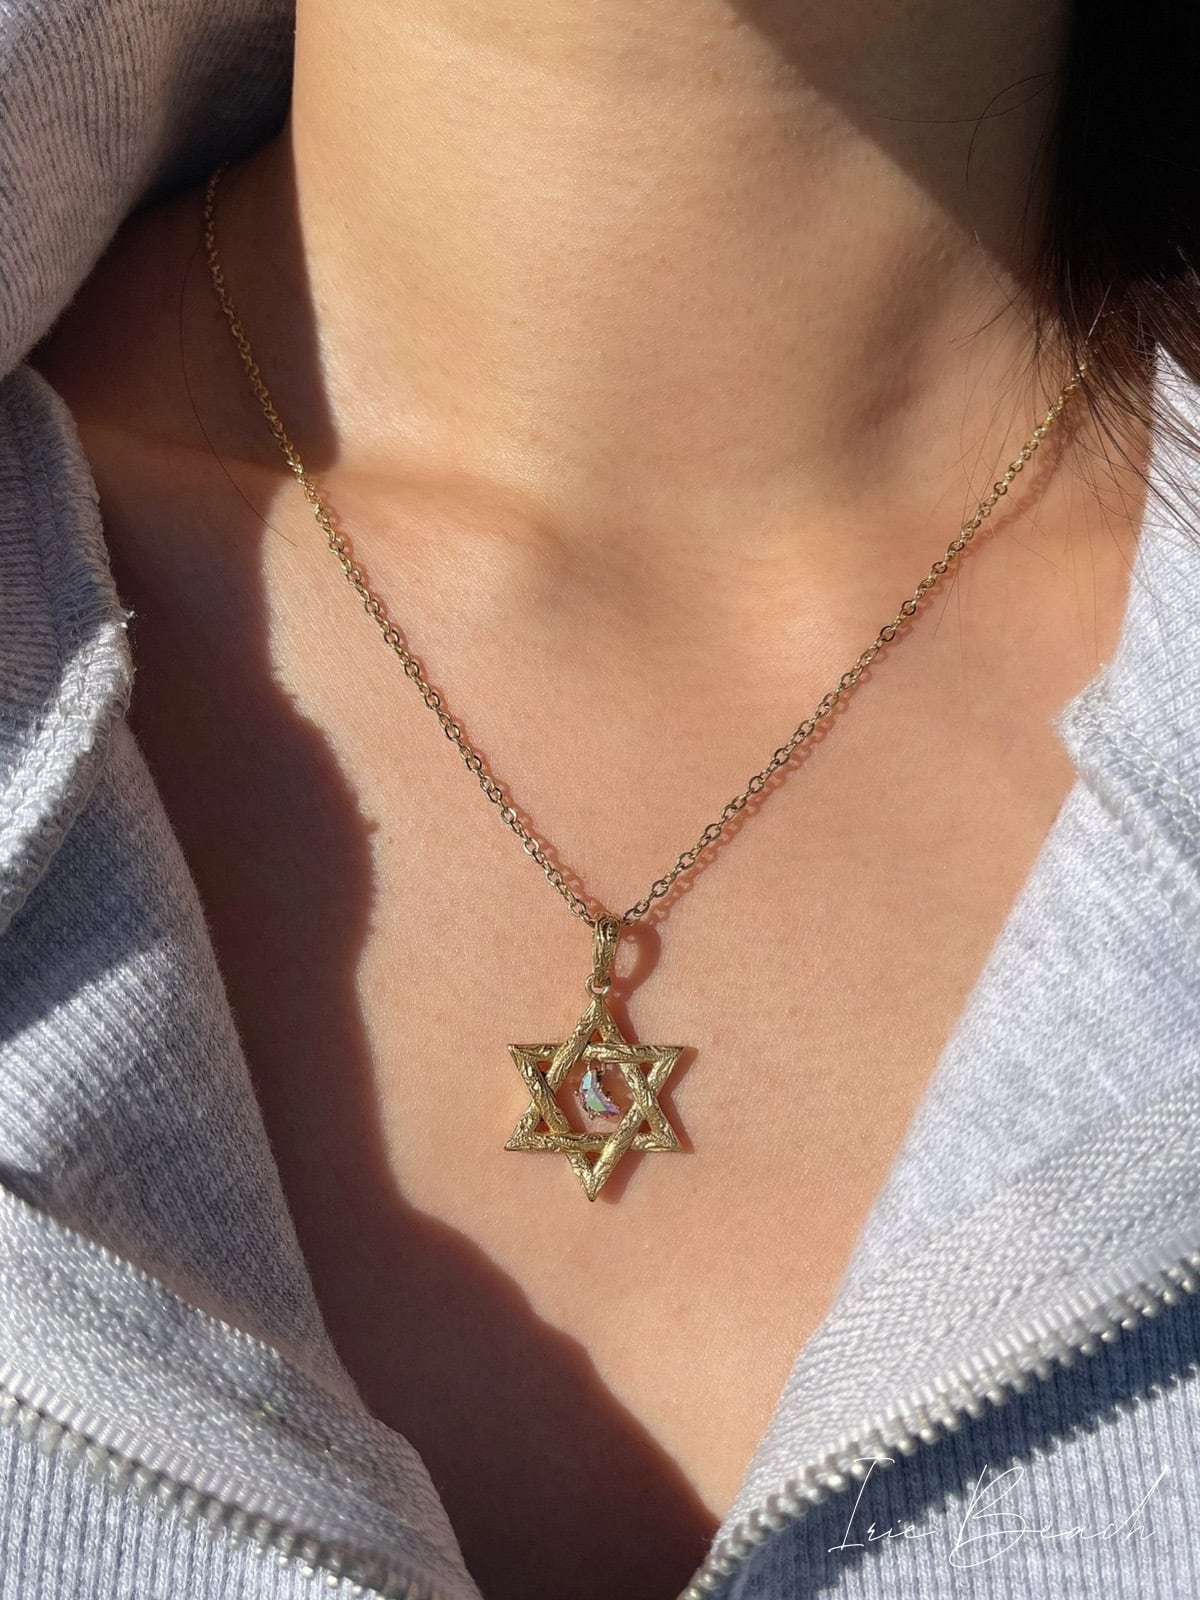 Hexagram moon necklace | IRIEBEACH